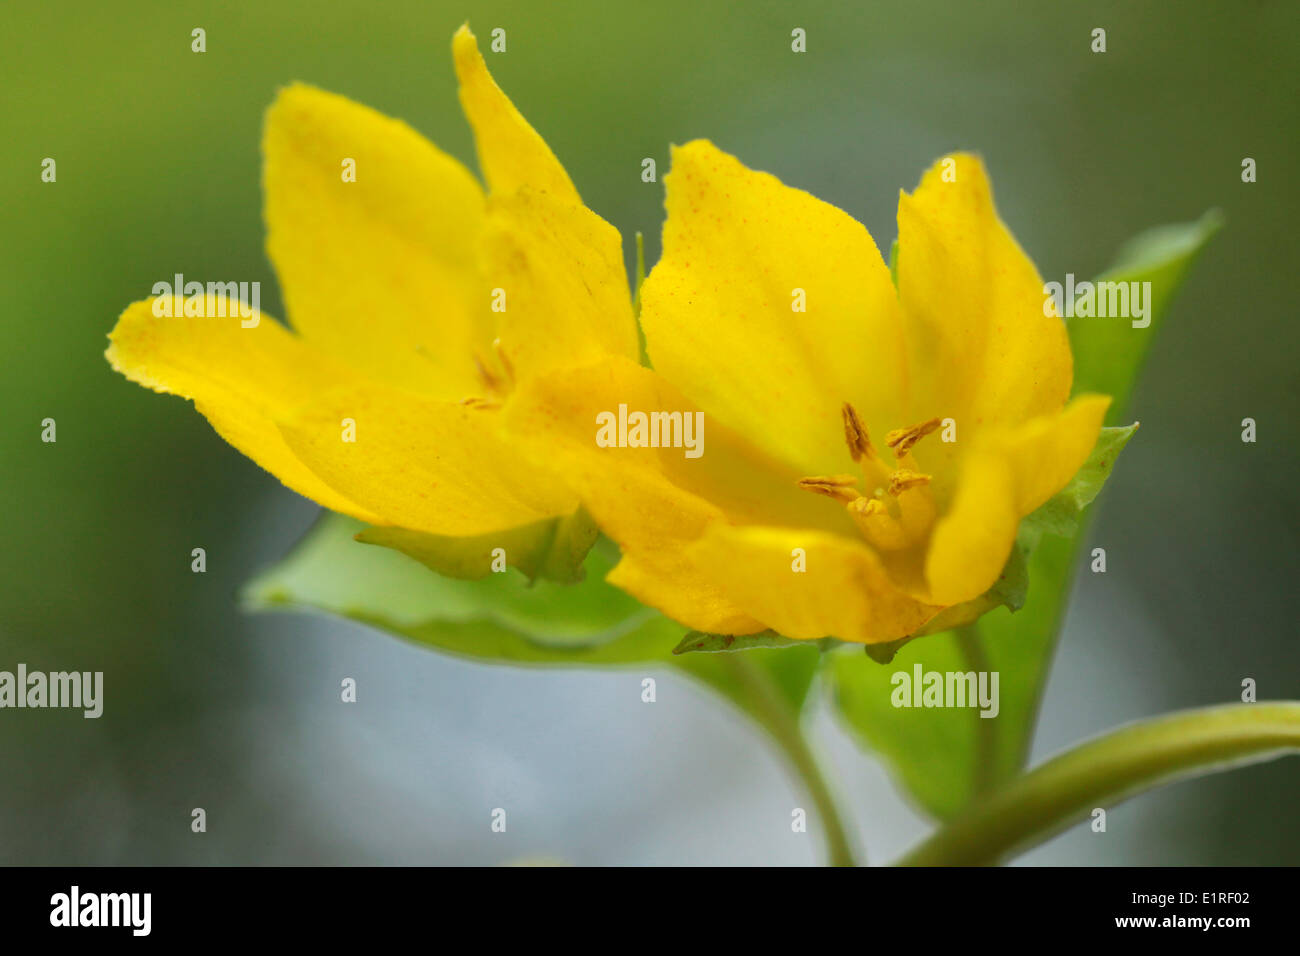 Flowering yellow flowers of Moneywort Stock Photo